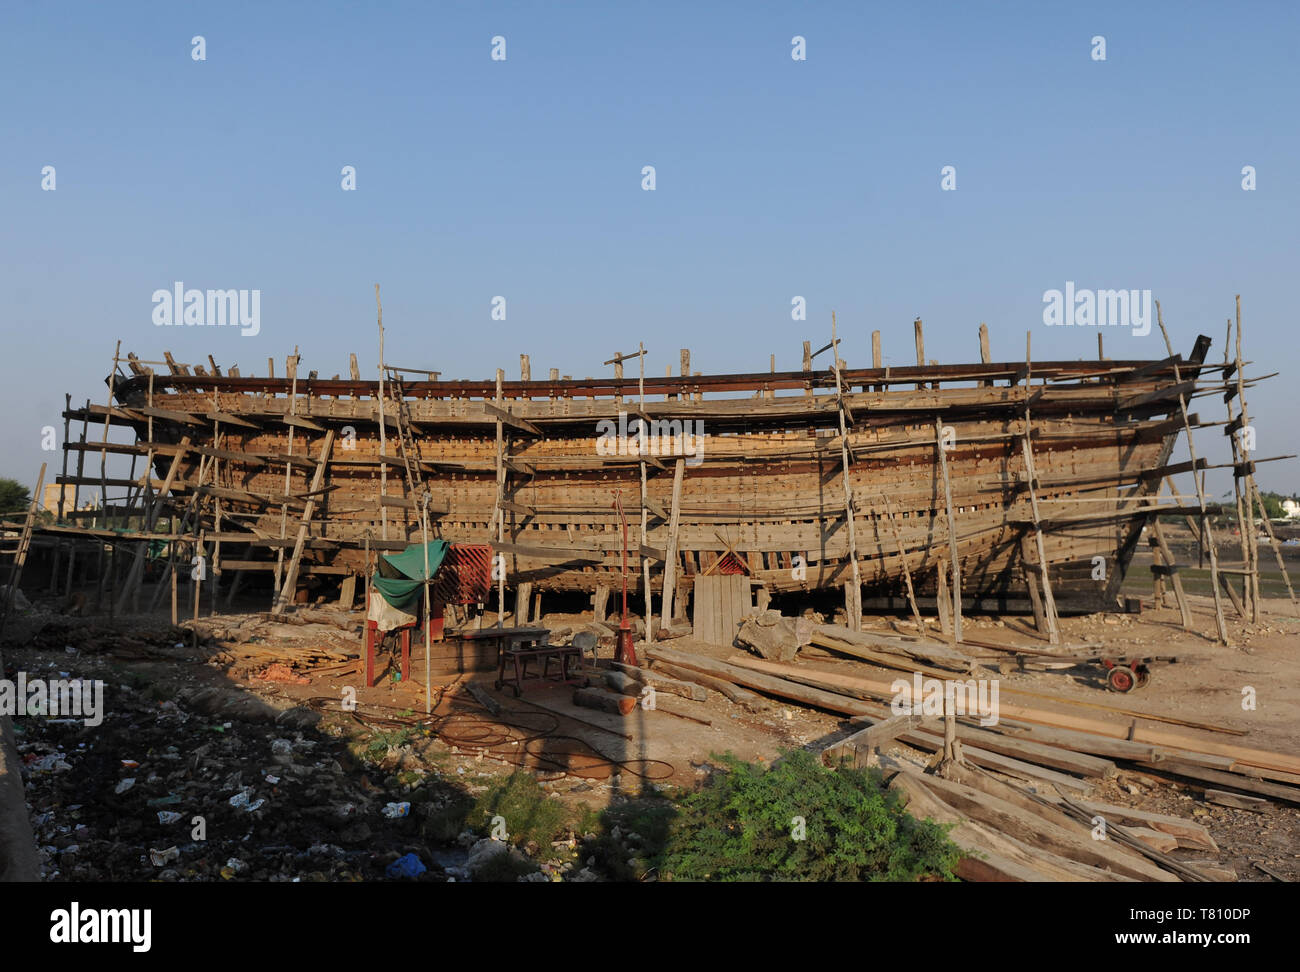 Mer traditionnel dhow, construit à la main à partir de bois Sal dans 400 ans de tradition, sur le fleuve Rukmavati, Mandvi, Gujarat, Inde, Asie Banque D'Images